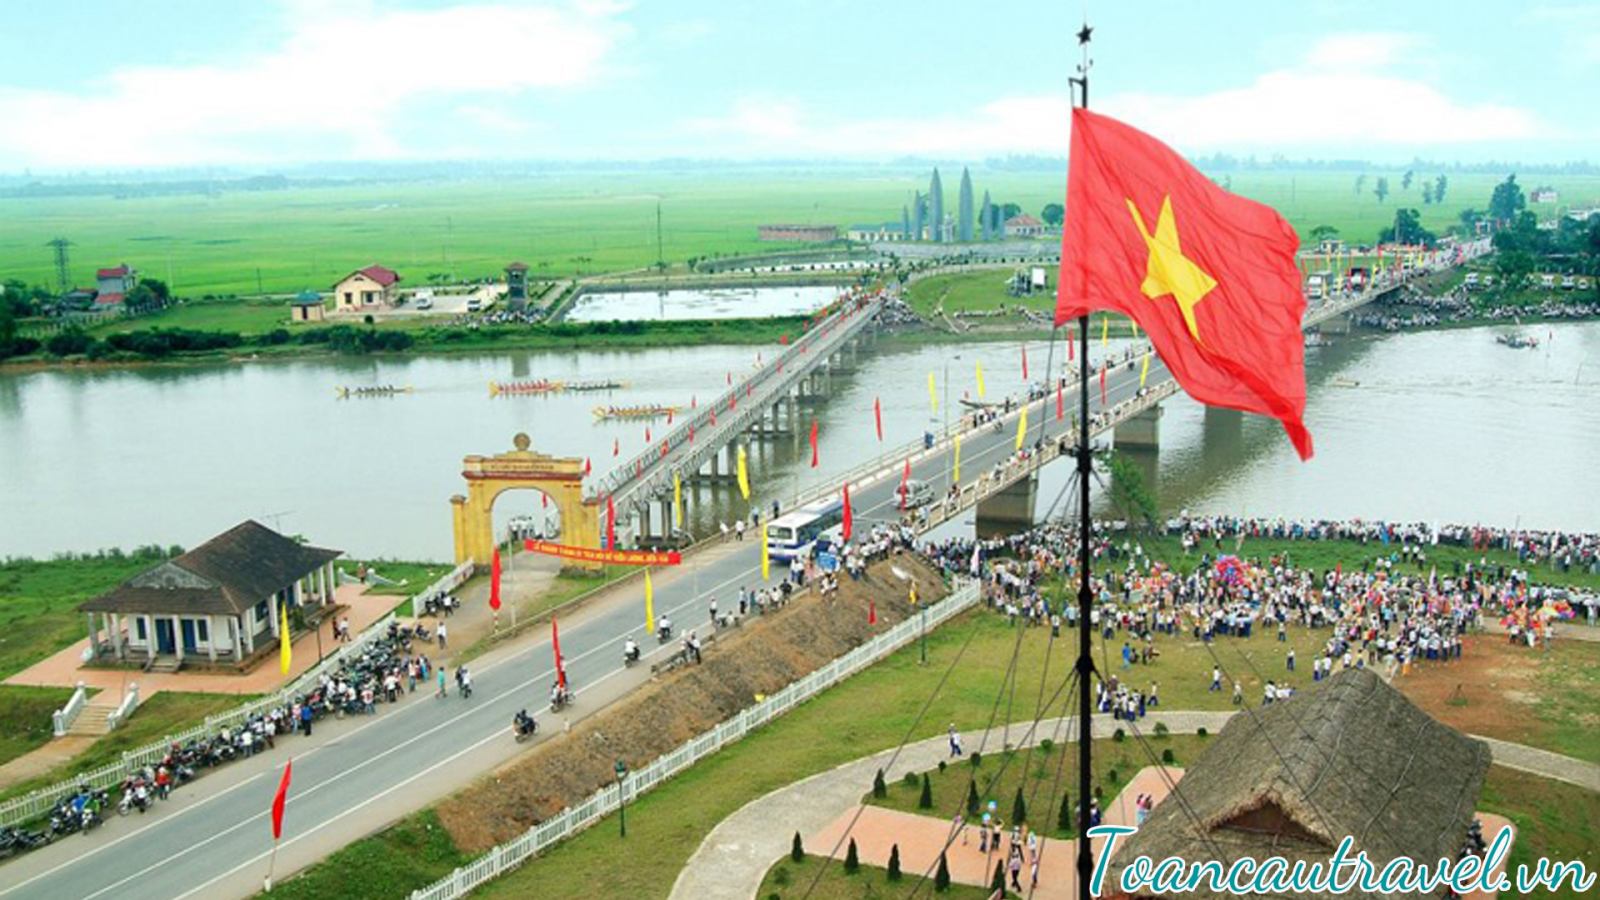 khu vực vĩ tuyến 17 – cầu Hiền Lương – Sông Bến Hải.